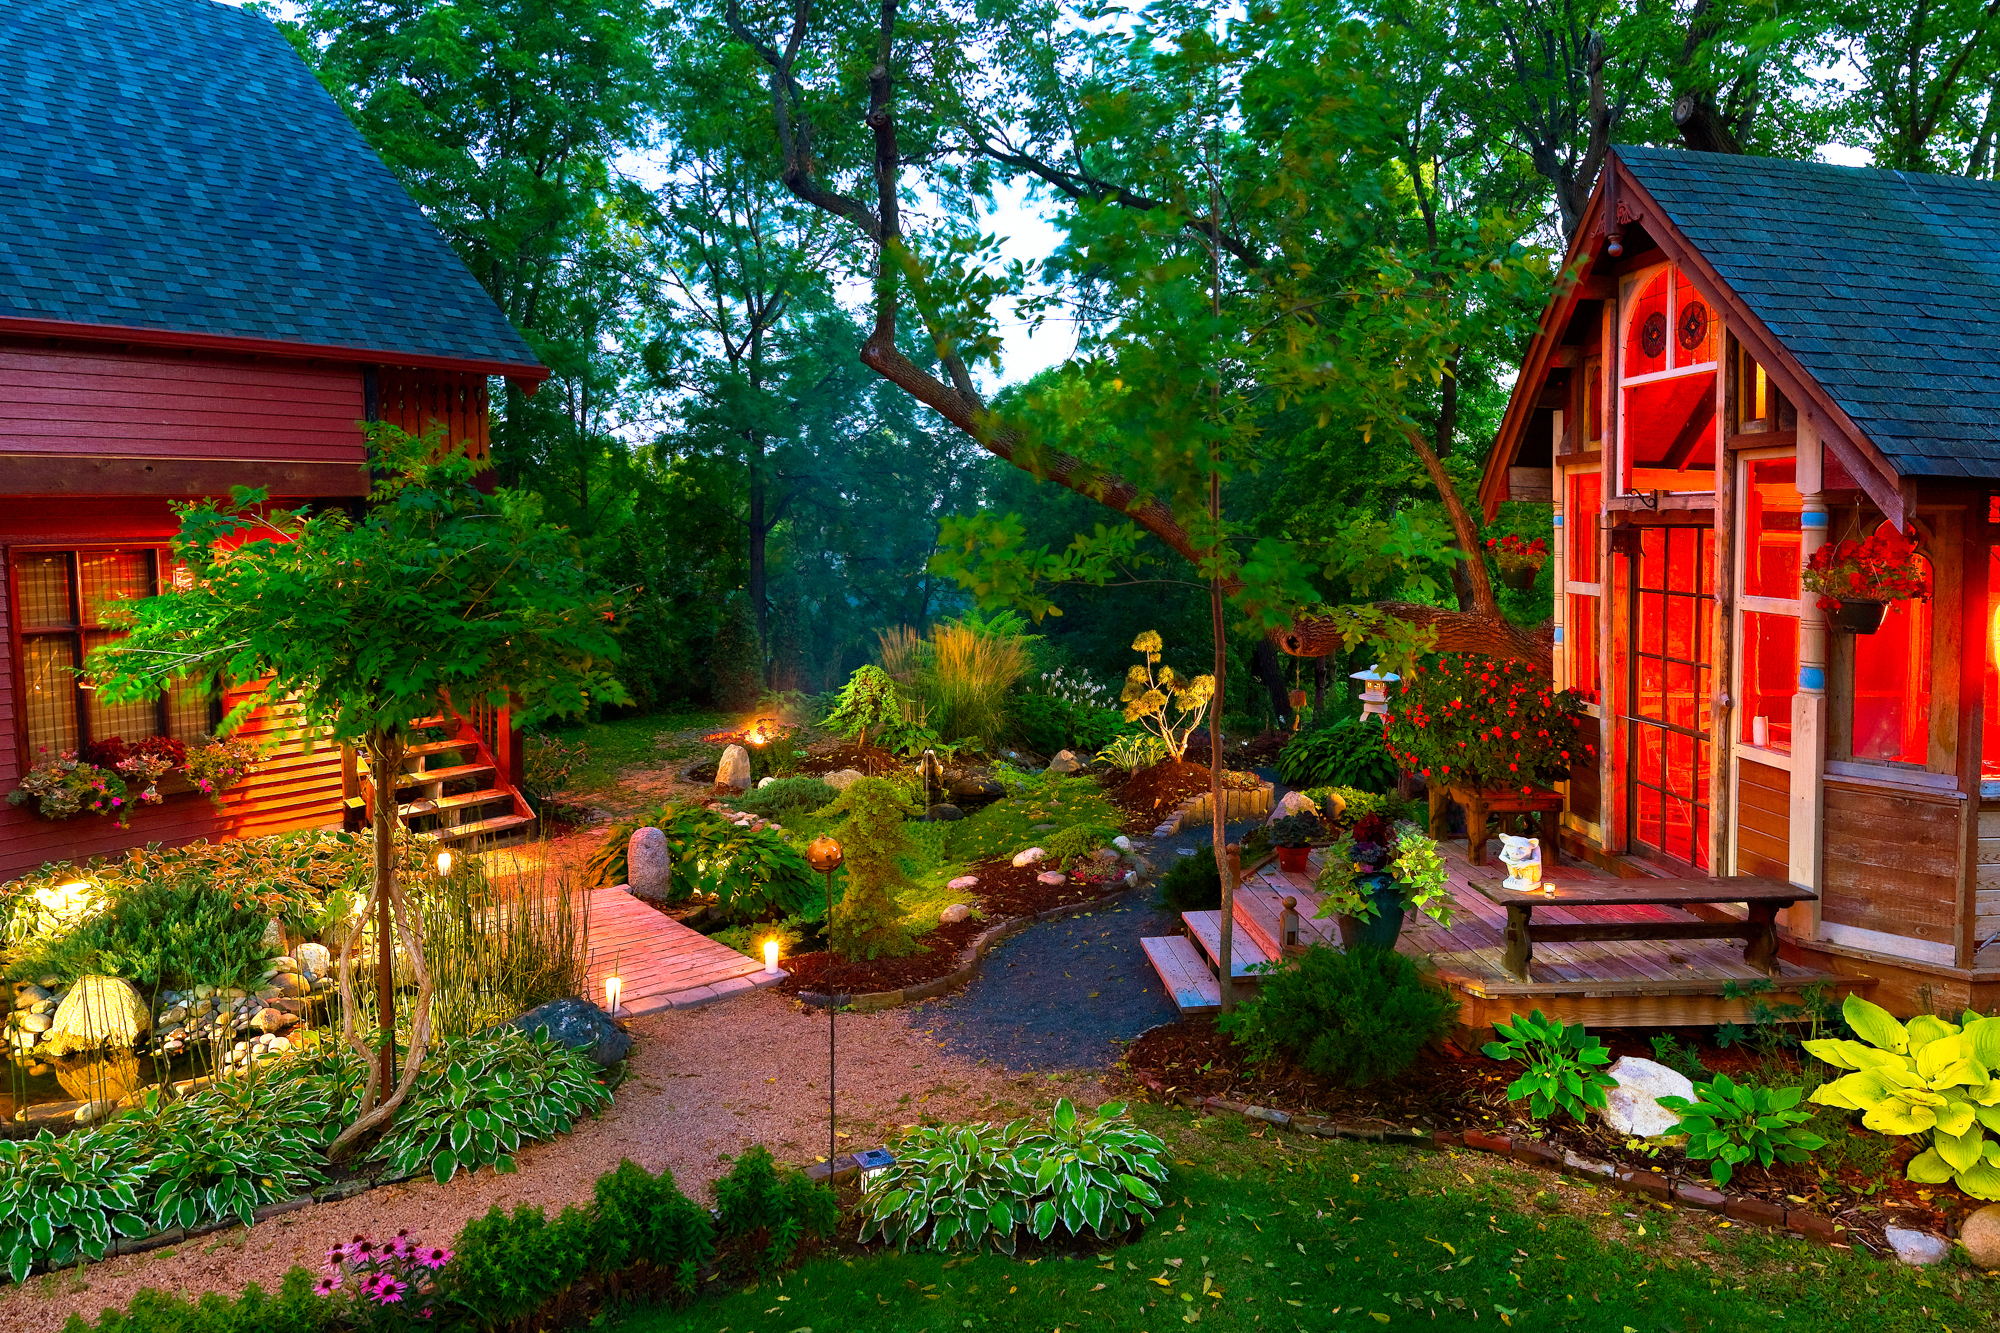 Дома около сад дедушки. Красивая дача. Домик в саду. Красивый домик с садом. Красивый сад на даче.